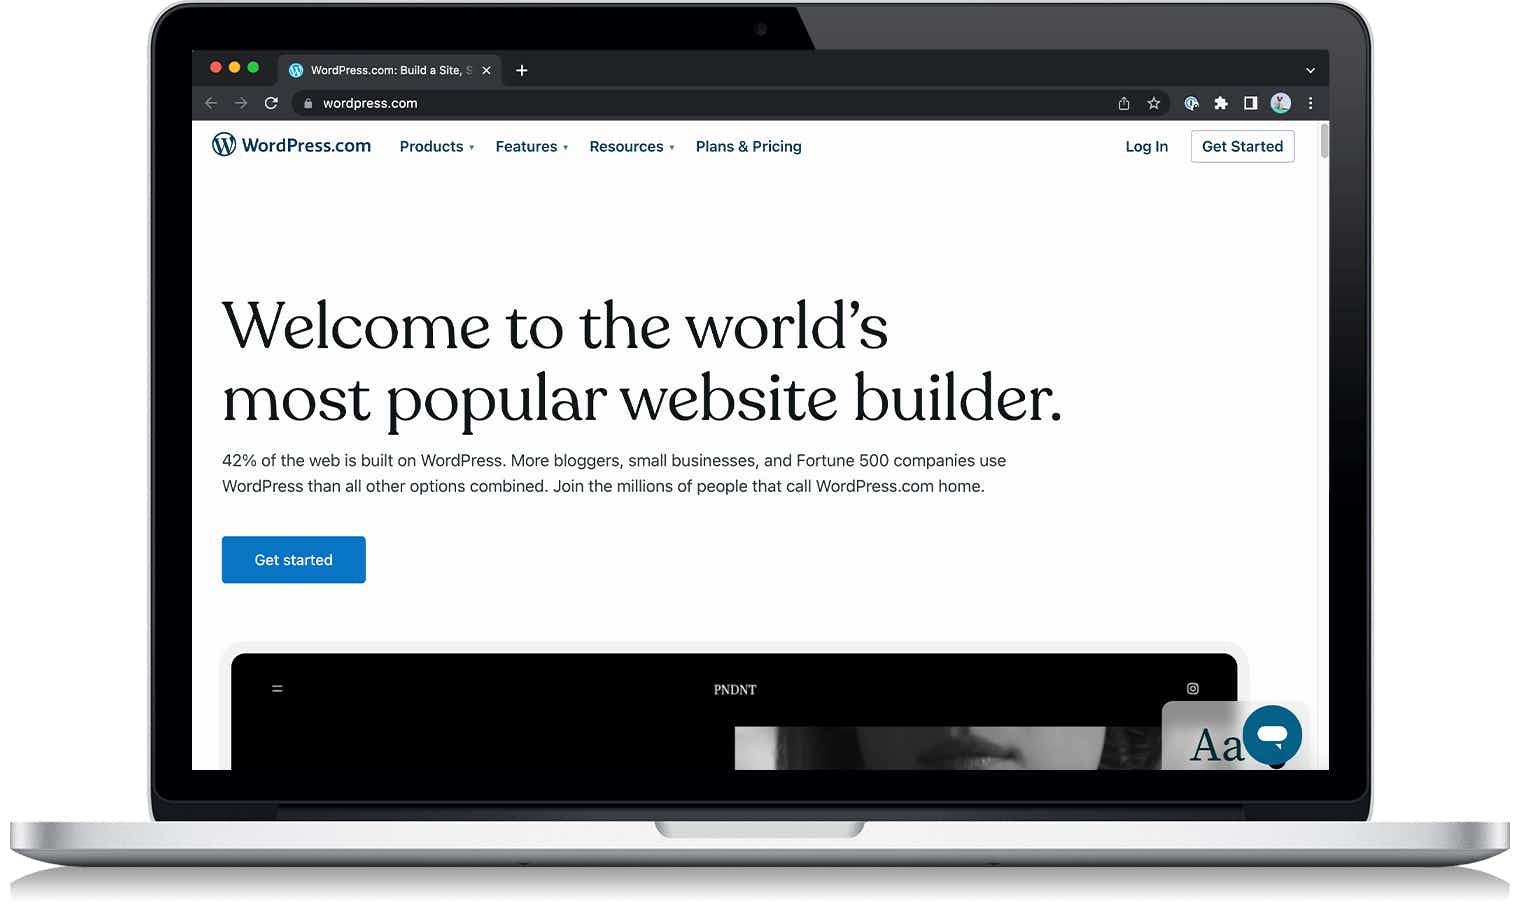 A screenshot from WordPress.com on a laptop